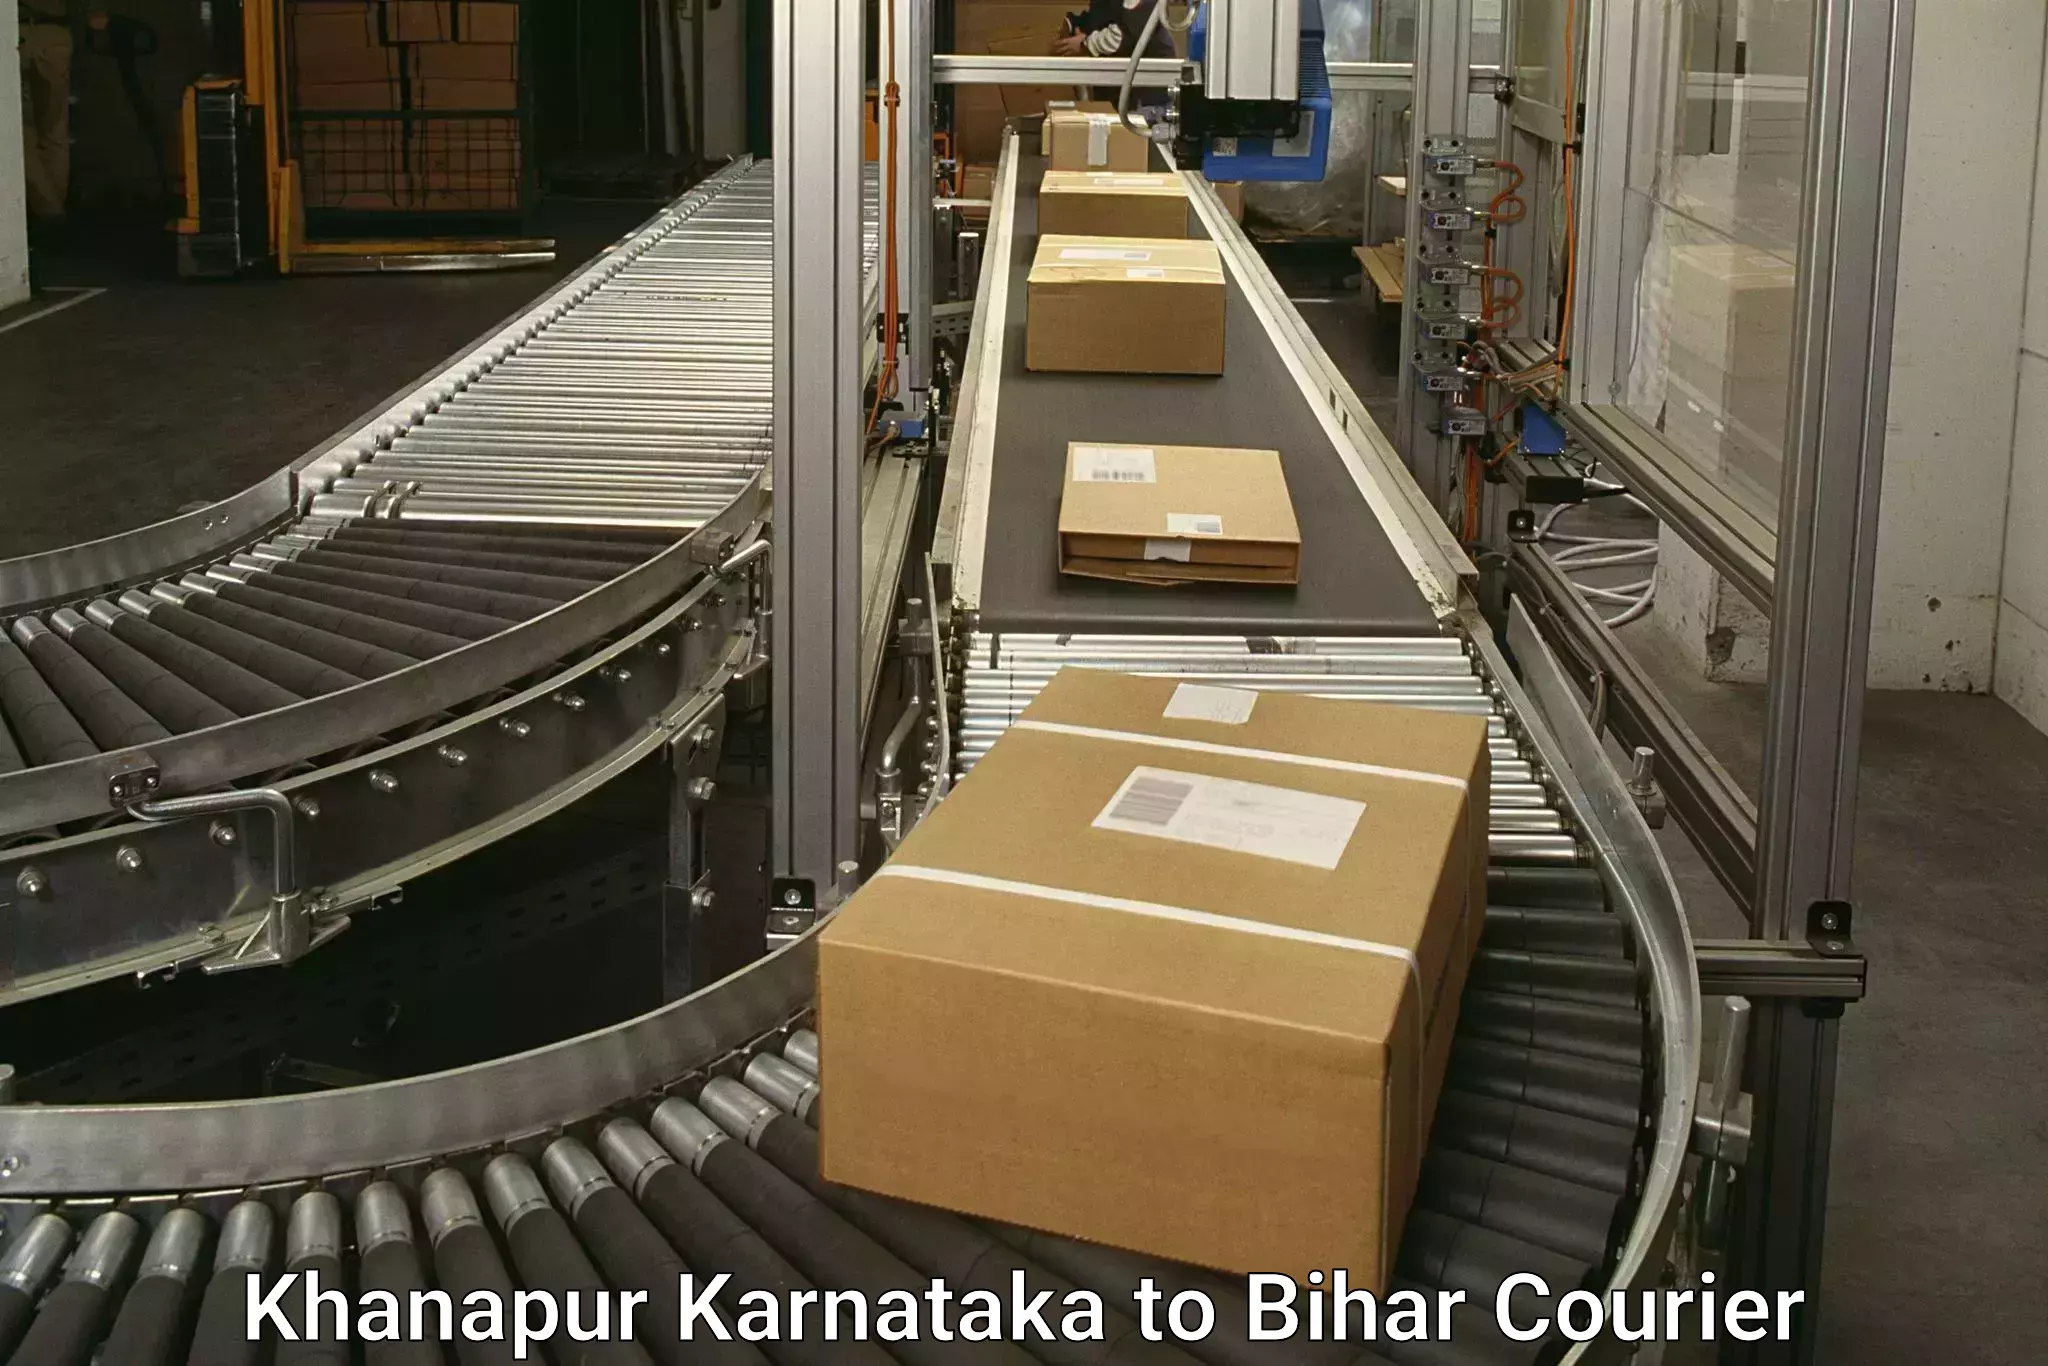 Efficient freight service Khanapur Karnataka to Raghunathpur Buxar